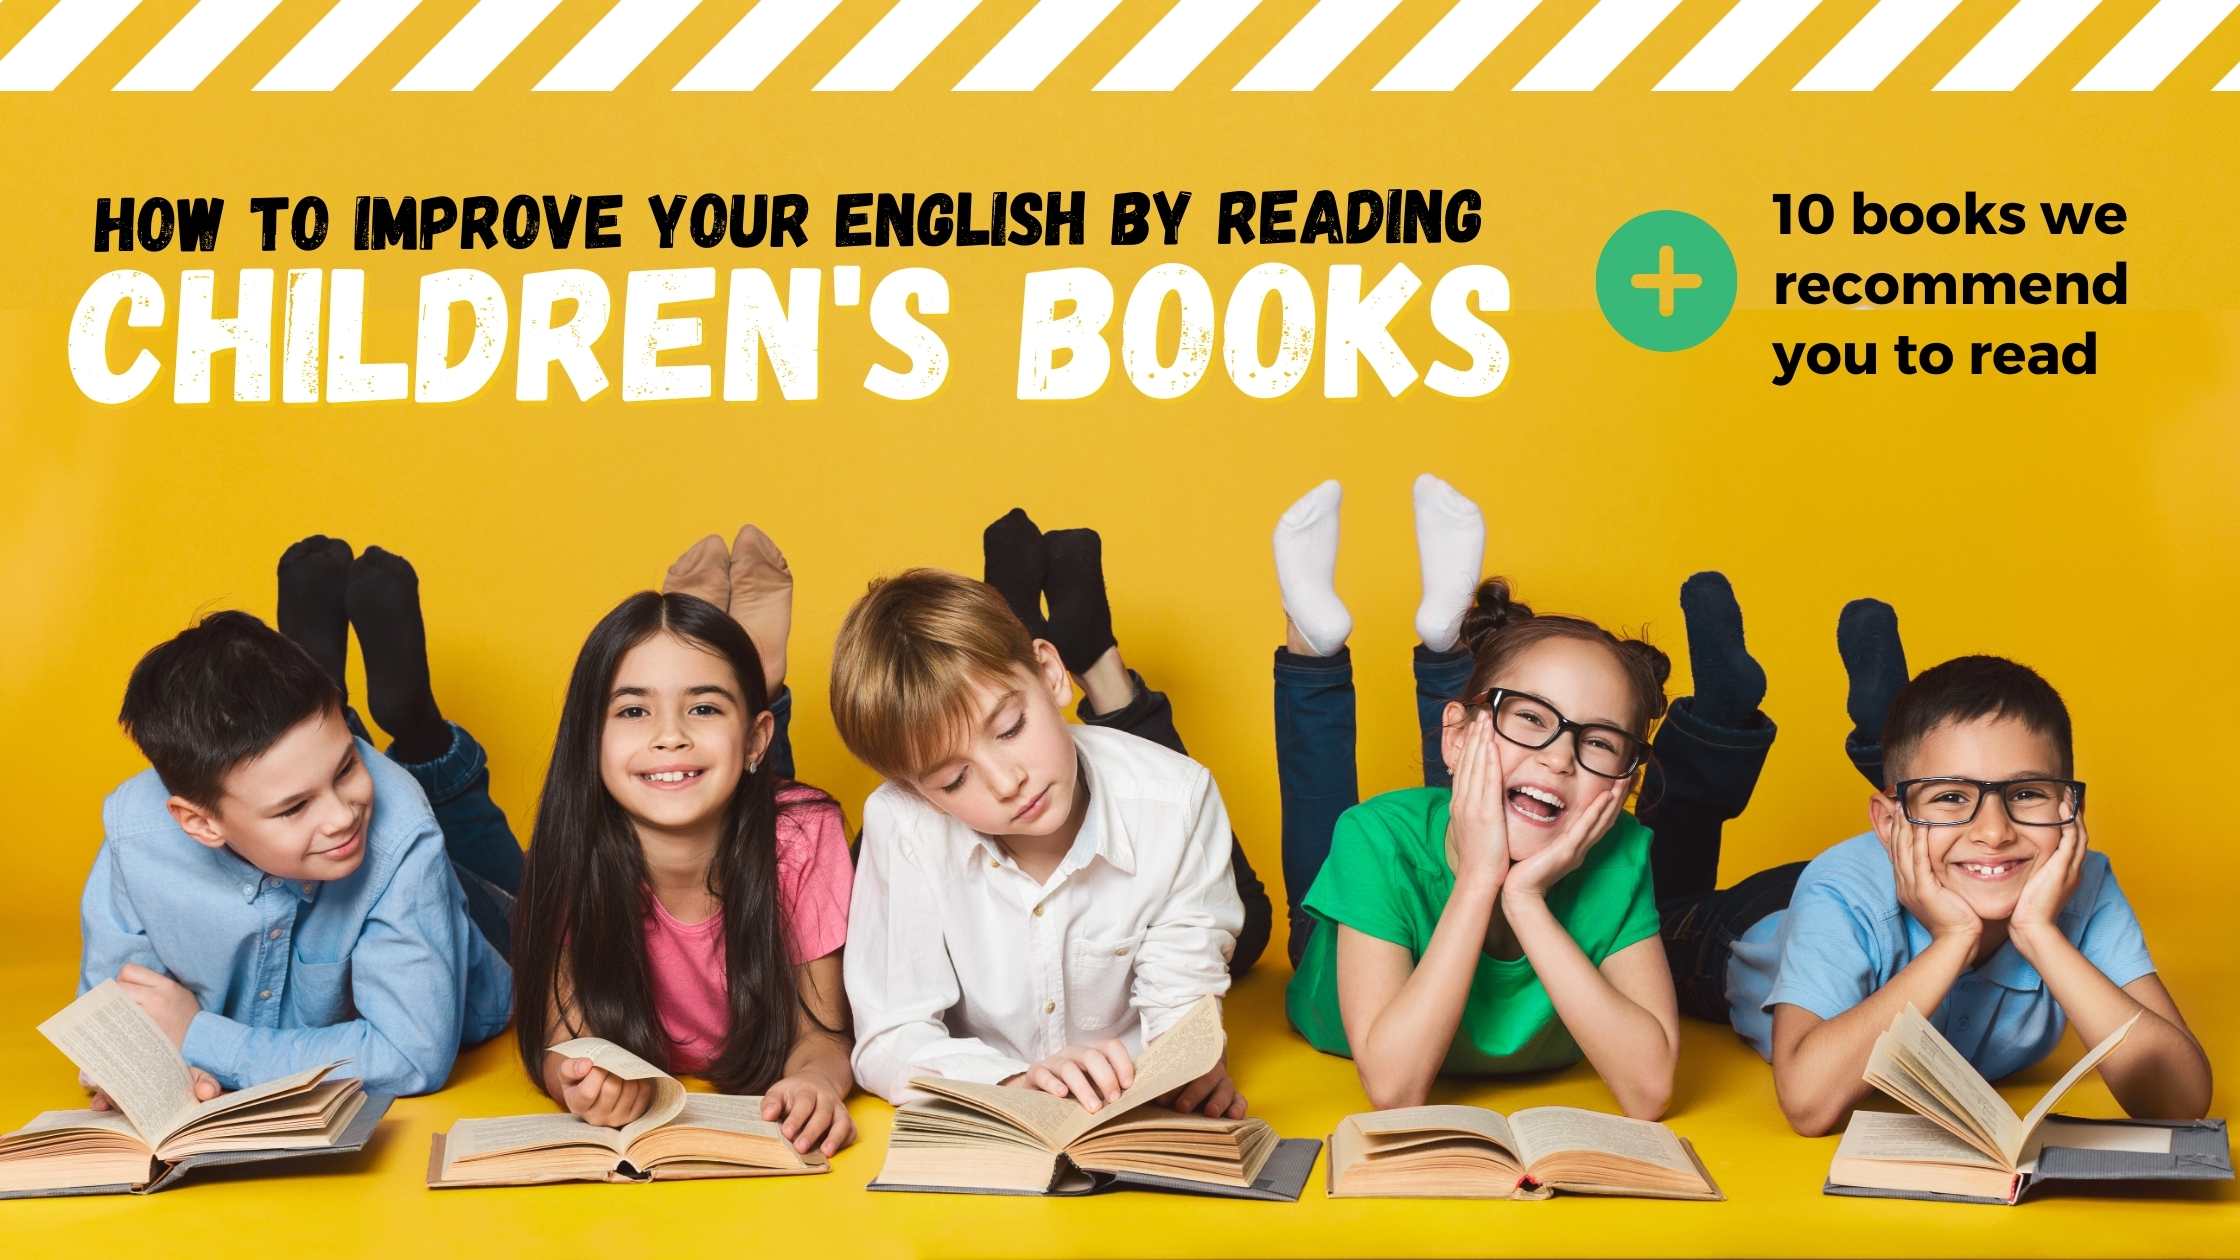 libros para niños en inglés, leer libros para niños en inglés, cómo mejorar la lectura en inglés